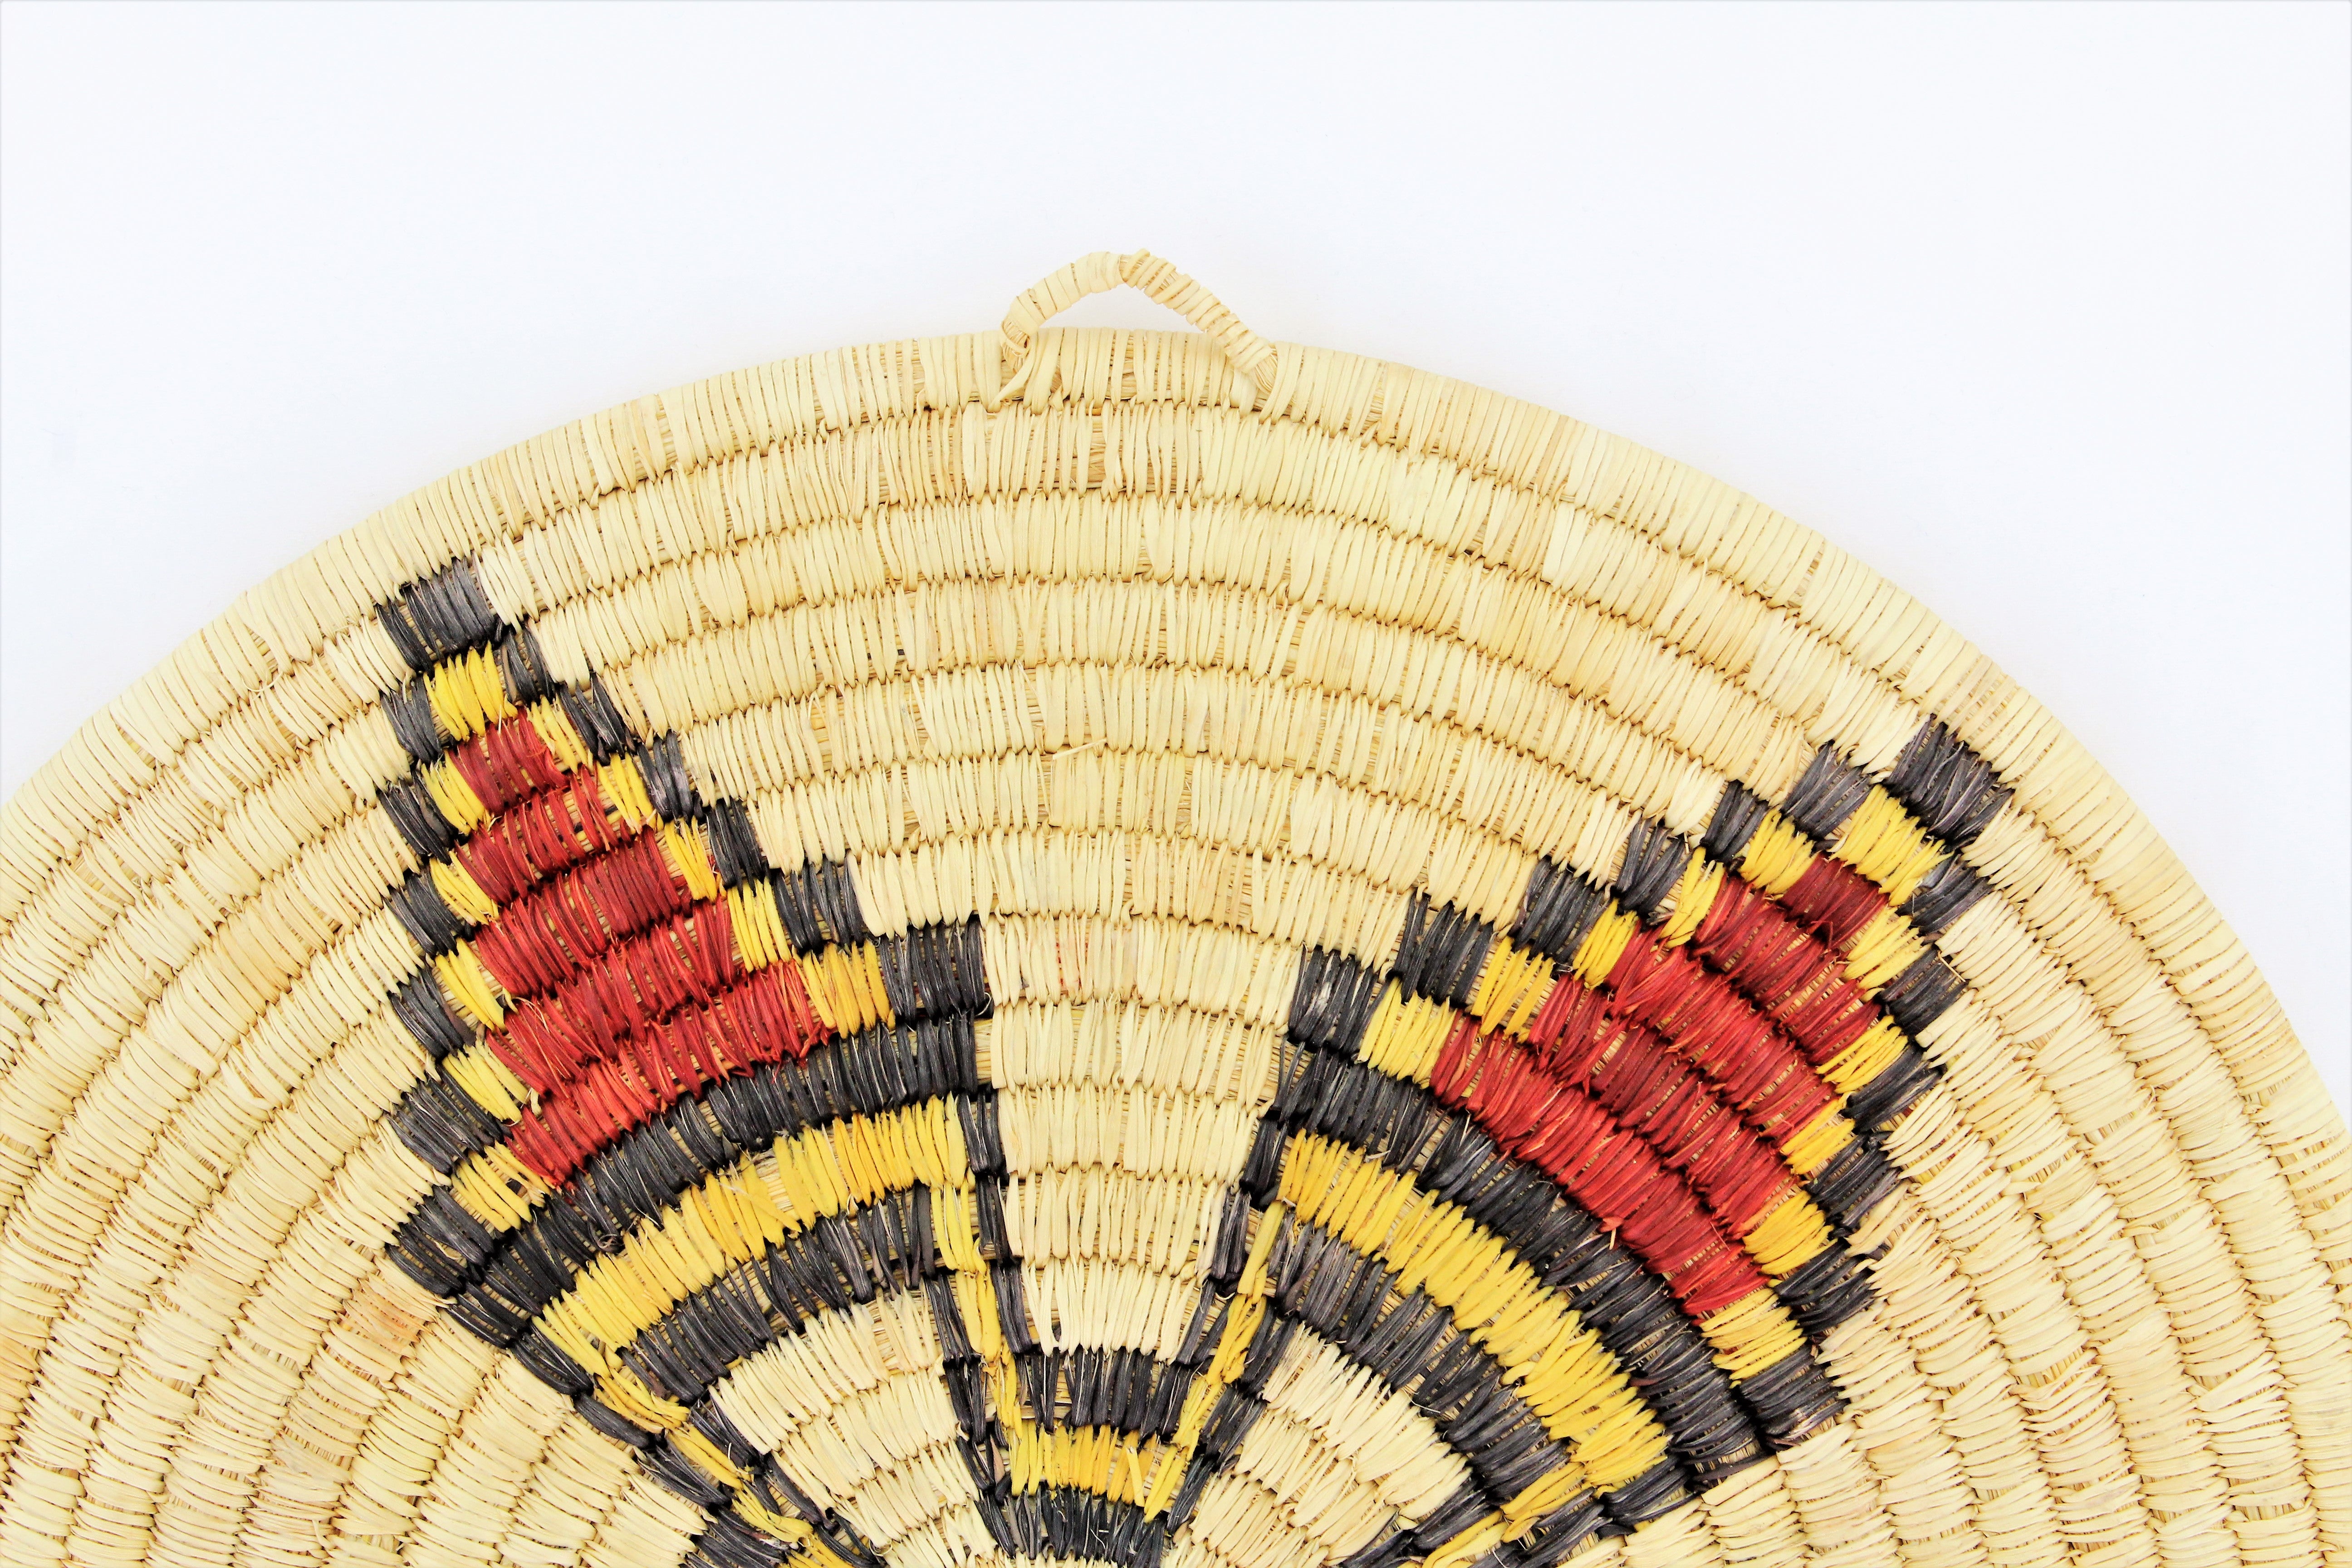 Hopi Second Mesa Coil Basket